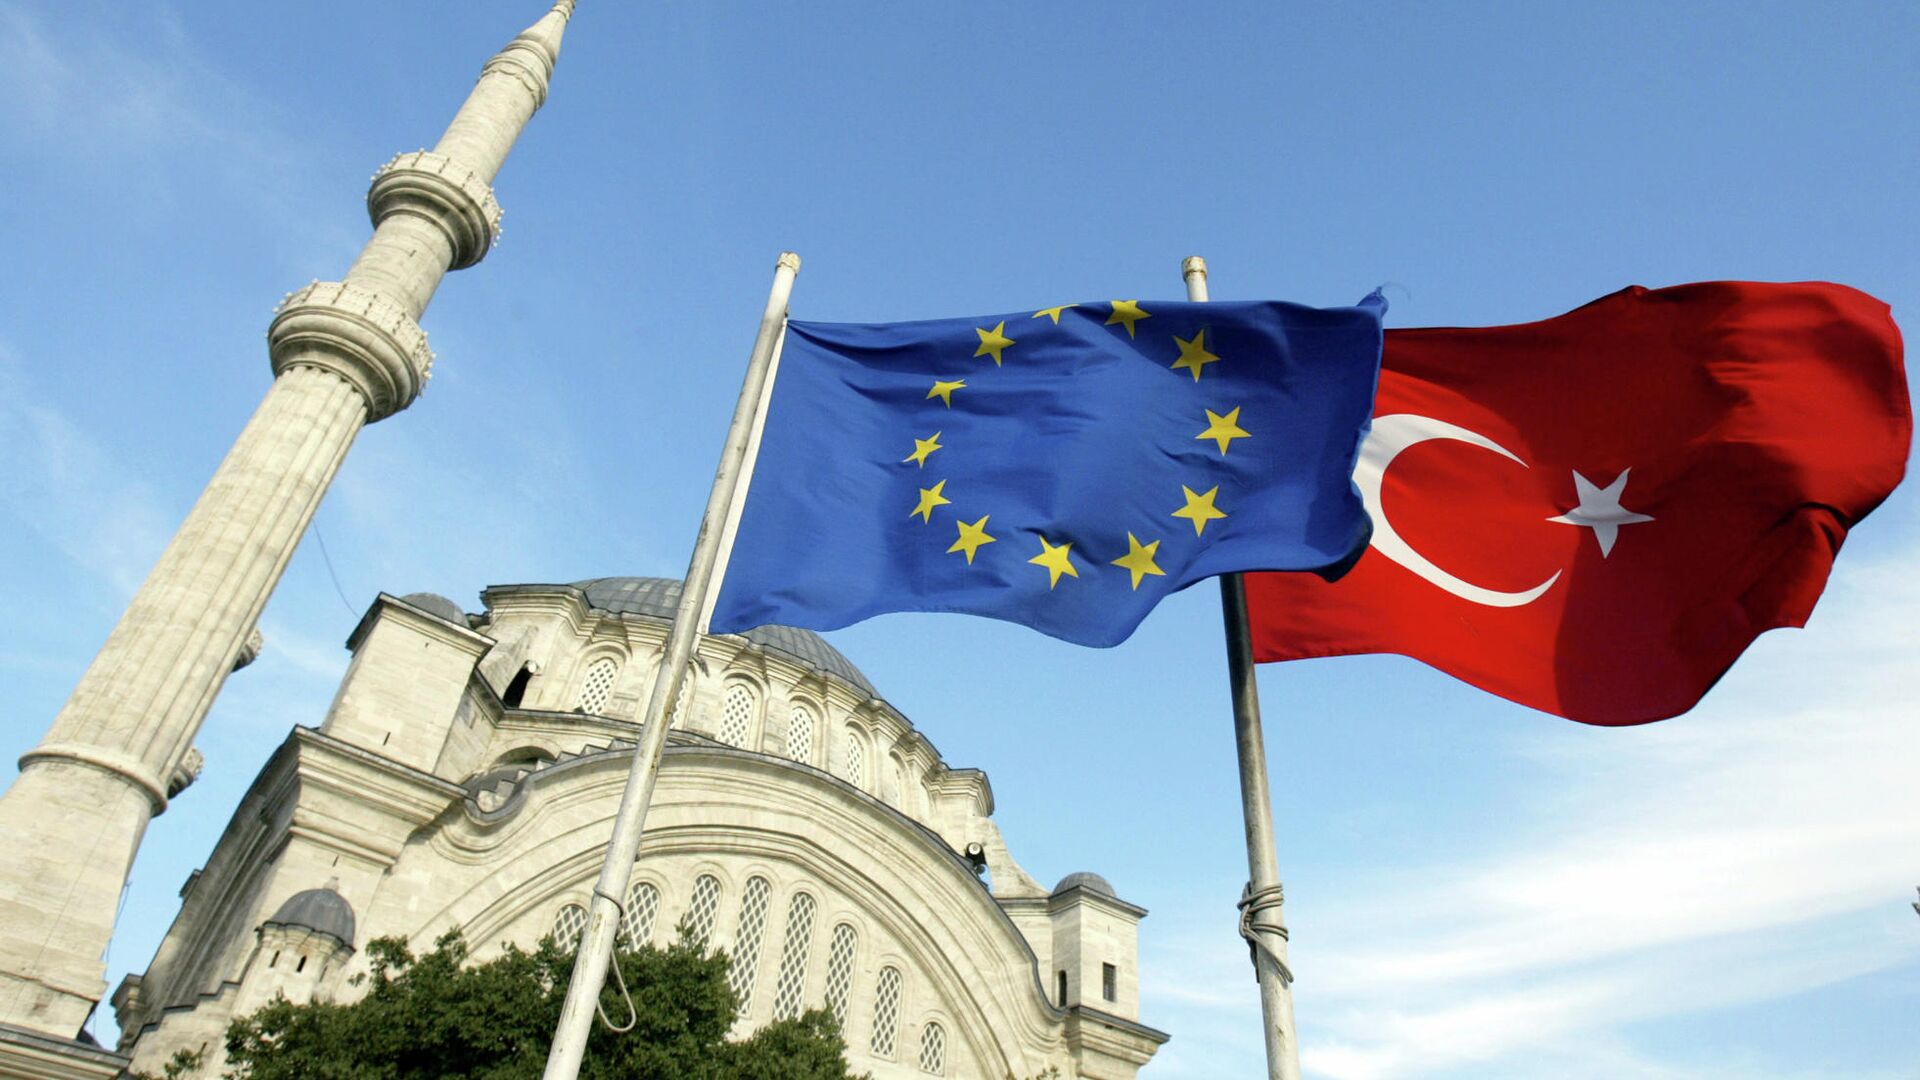 Флаги Турции и ЕС перед мечетью в Стамбуле  - РИА Новости, 1920, 11.12.2020